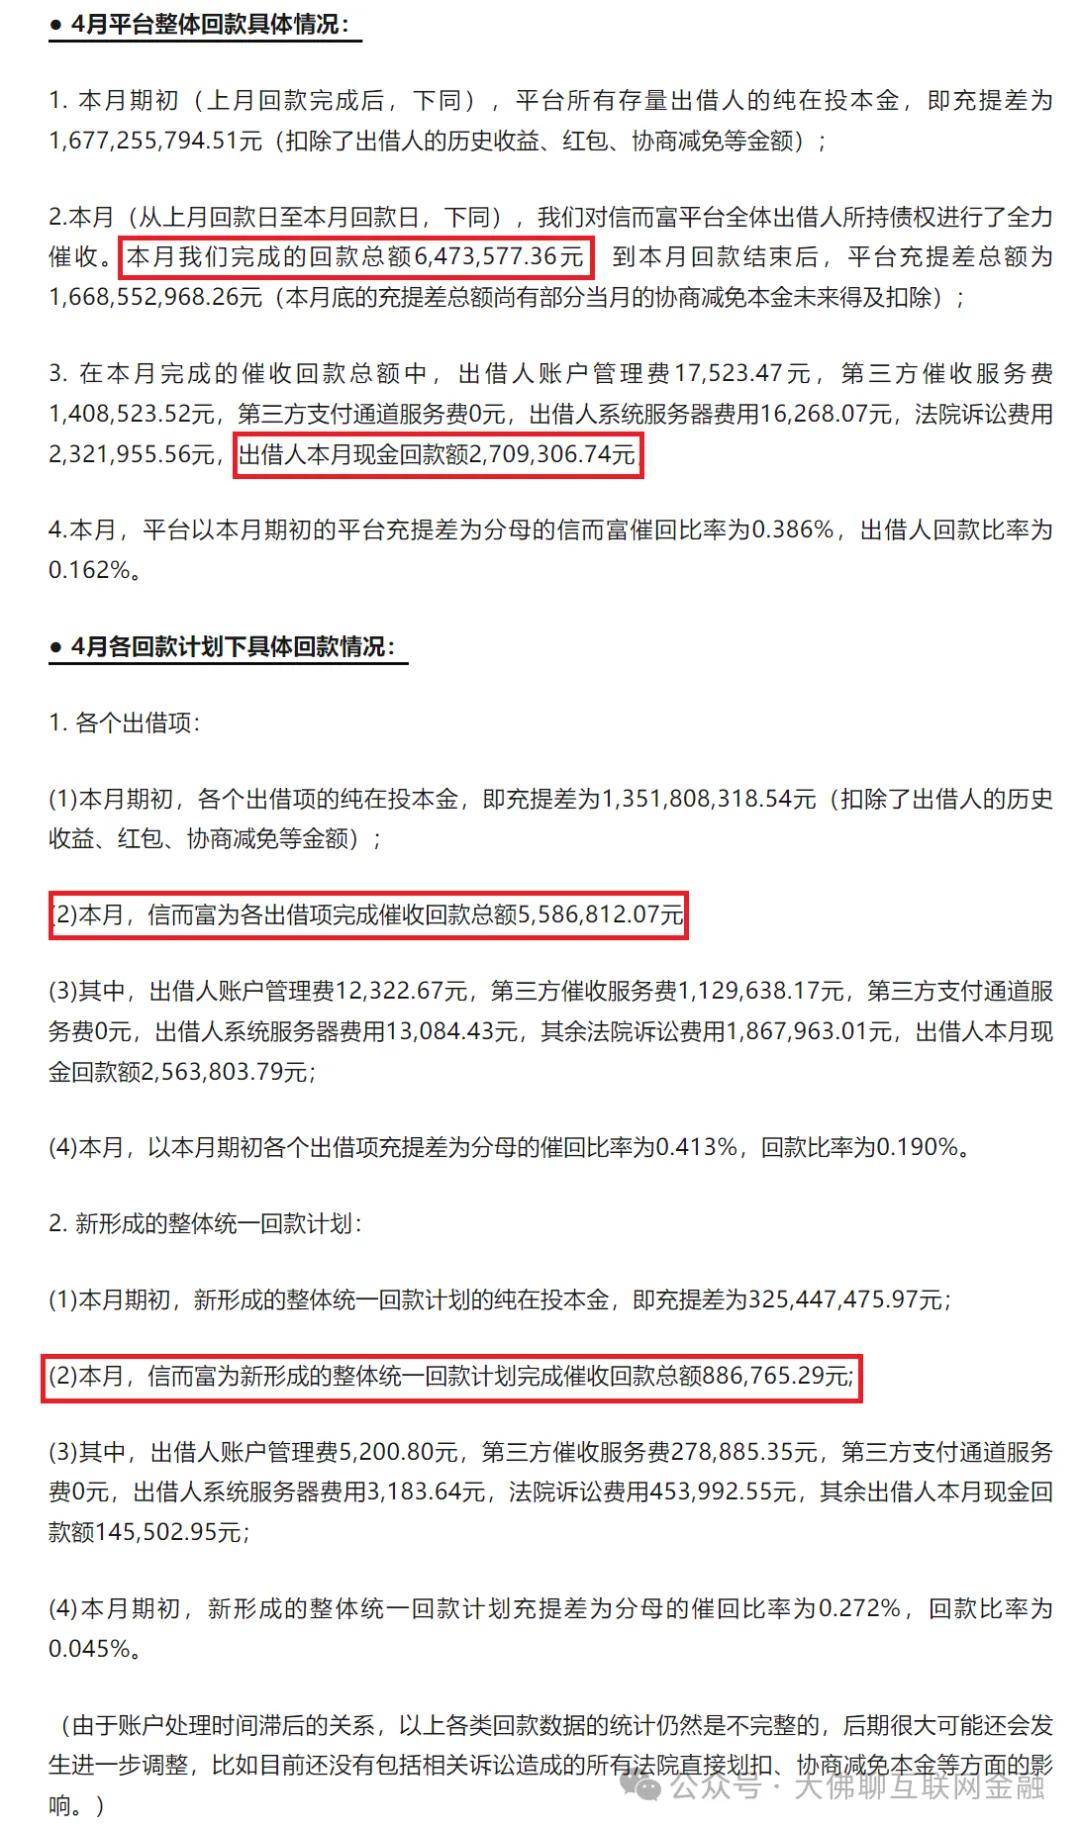 5,金玉汇萃公司非吸案:审查起诉2024年4月23日,关于犯罪嫌疑人俞庆龙